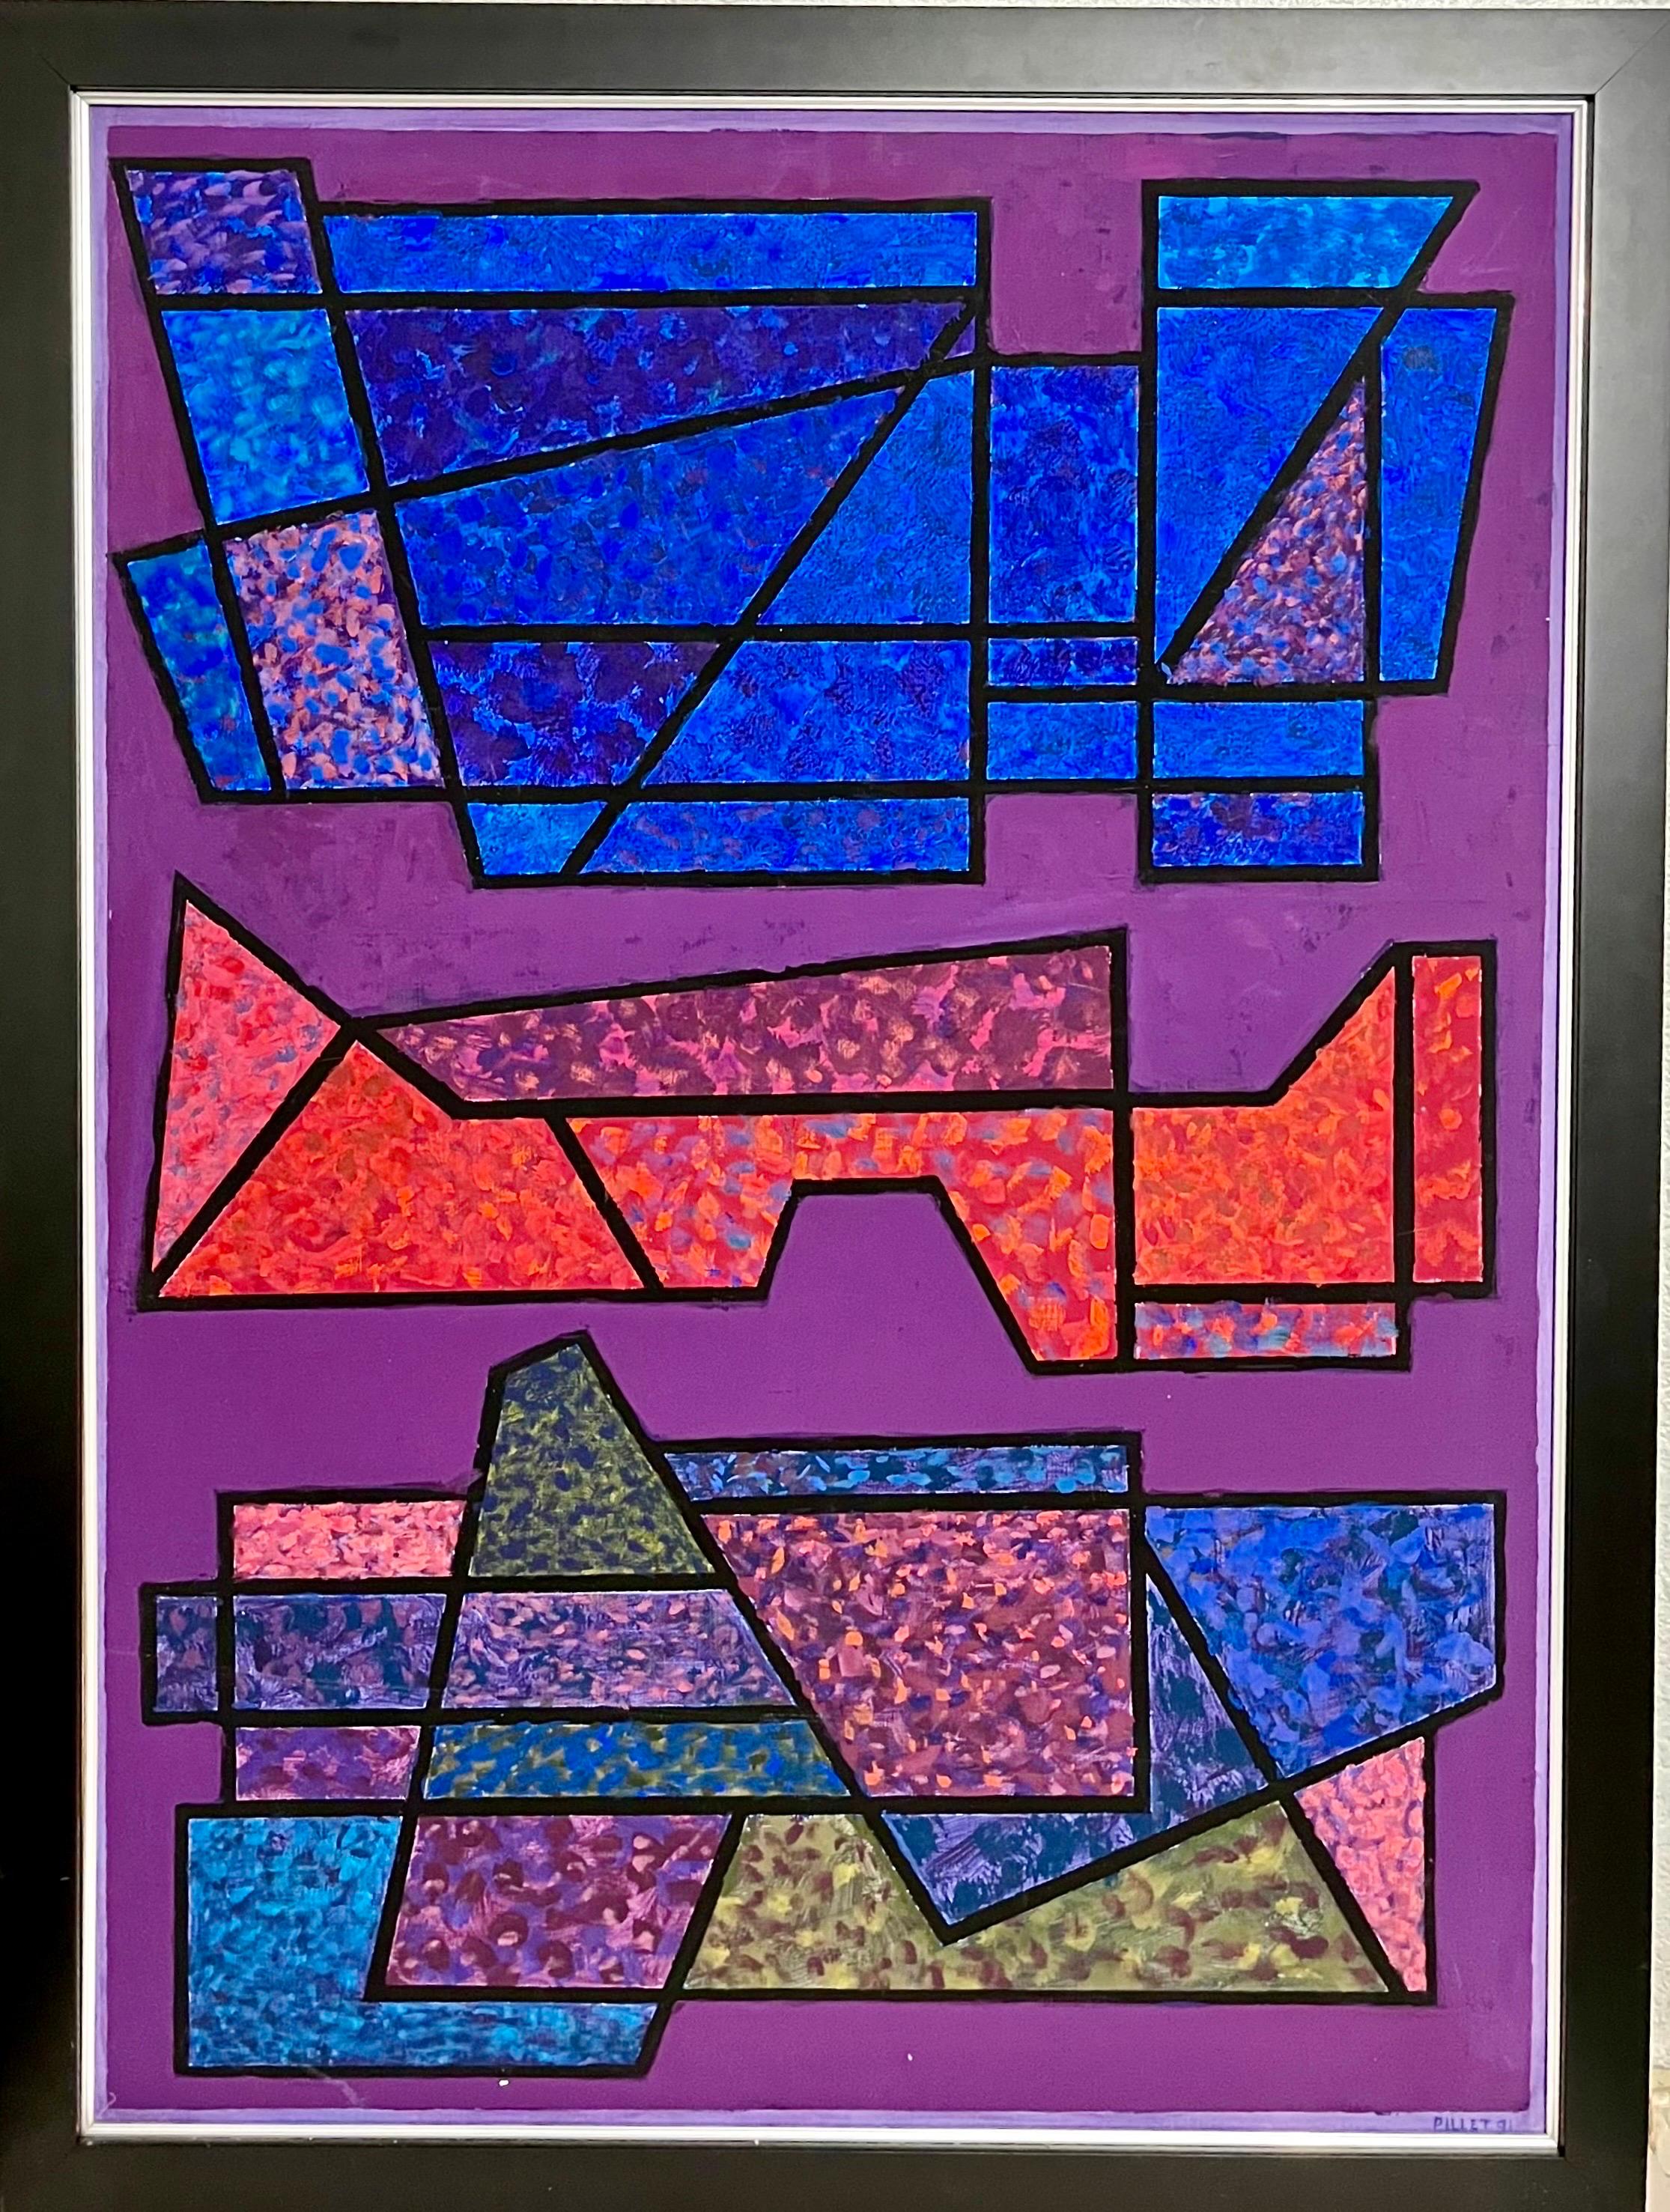 Edgard Pillet (français, 1912-1996). 
Peinture à l'huile abstraite moderne sur toile. 
Intitulé "Olifant". Une œuvre vibrante aux couleurs violettes, roses et bleues. Signé à la main et daté 1991 en bas à droite. 
Inscription à la main du nom de